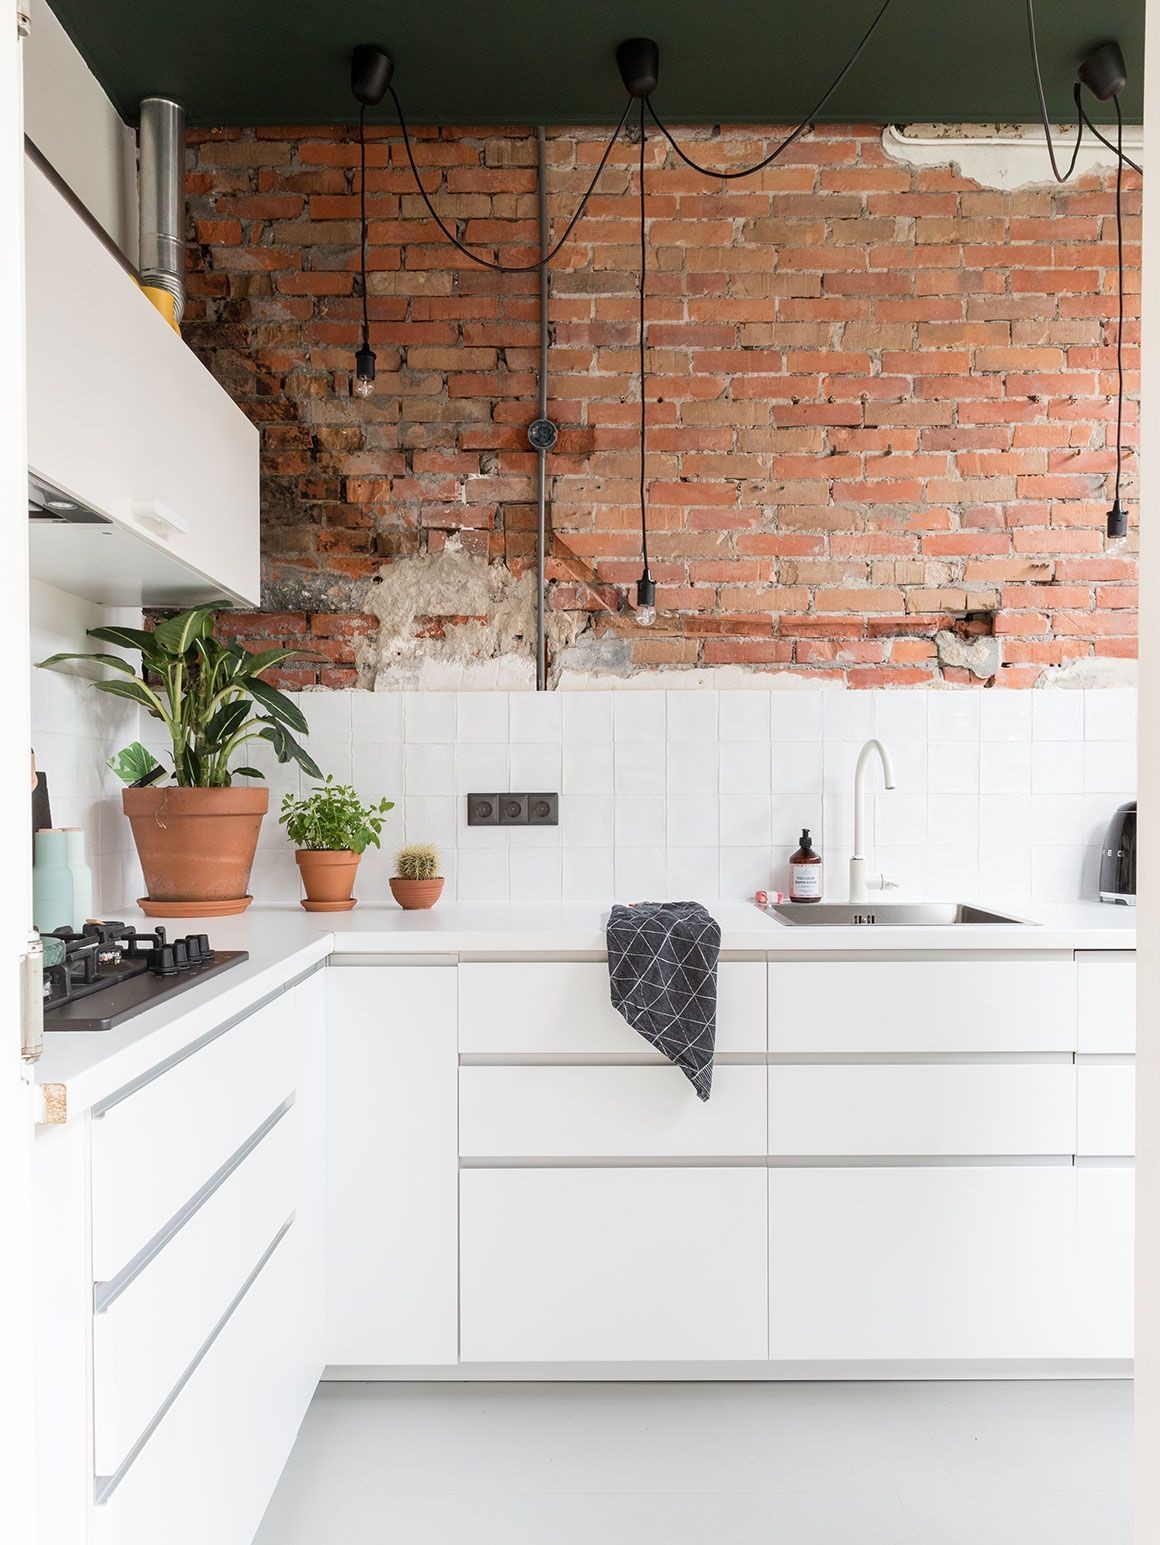 
Biến bức tường truyền thống của căn bếp thành bức tường thô mộc, tạo nét đẹp theo phong cách công nghiệp cổ điển
